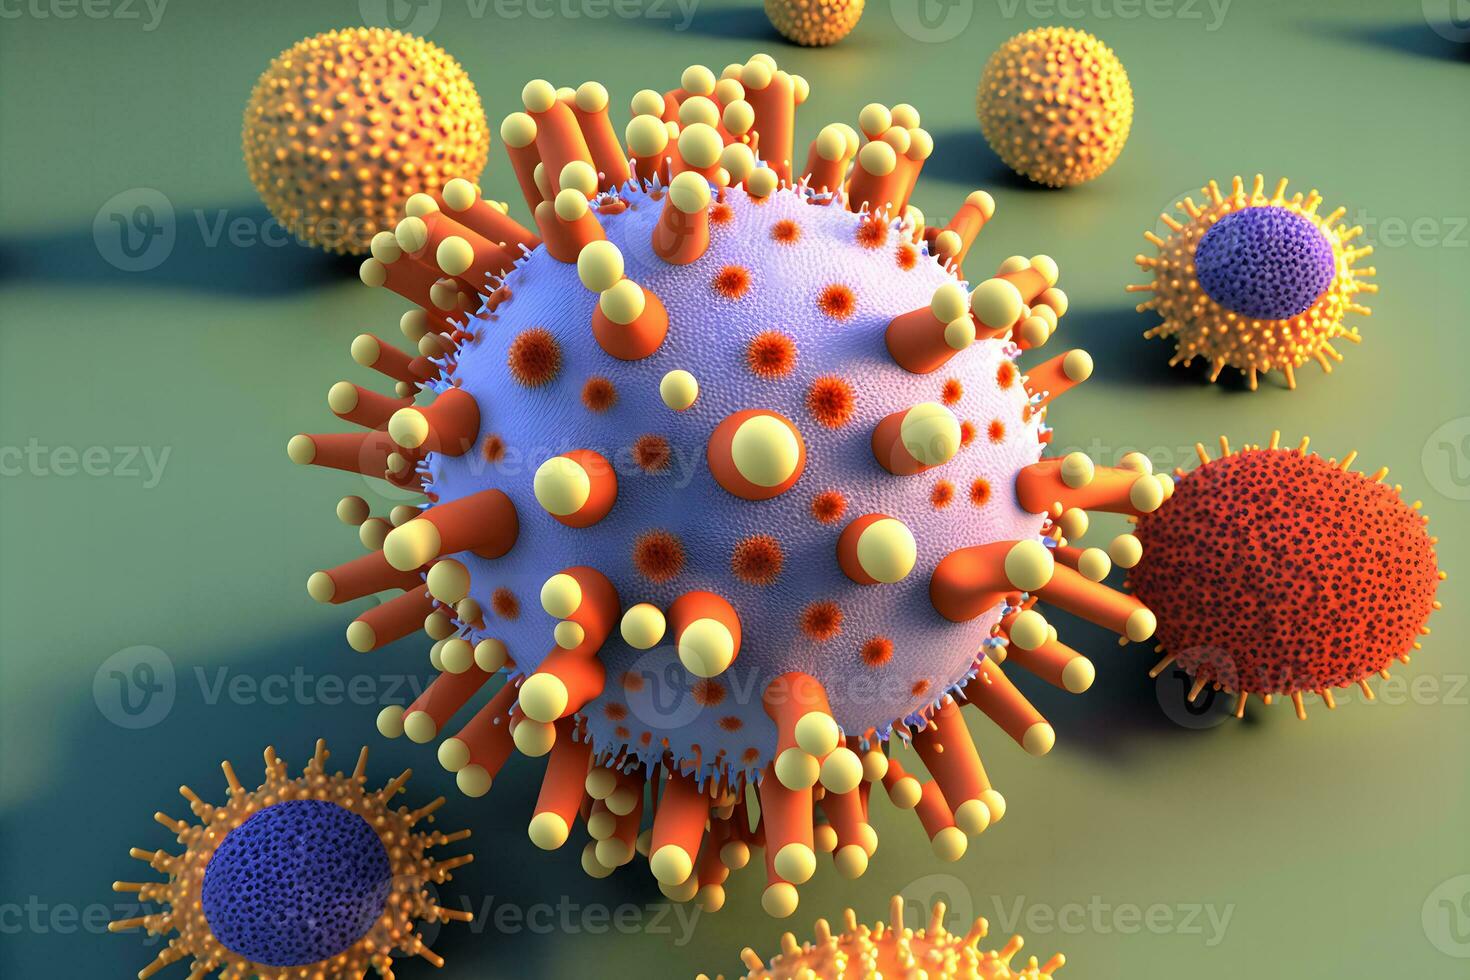 abstrakt Aussicht von Virus von Grippe oder covid 19 Roman Coronavirus durch Mikroskop. neural Netzwerk generiert Kunst foto